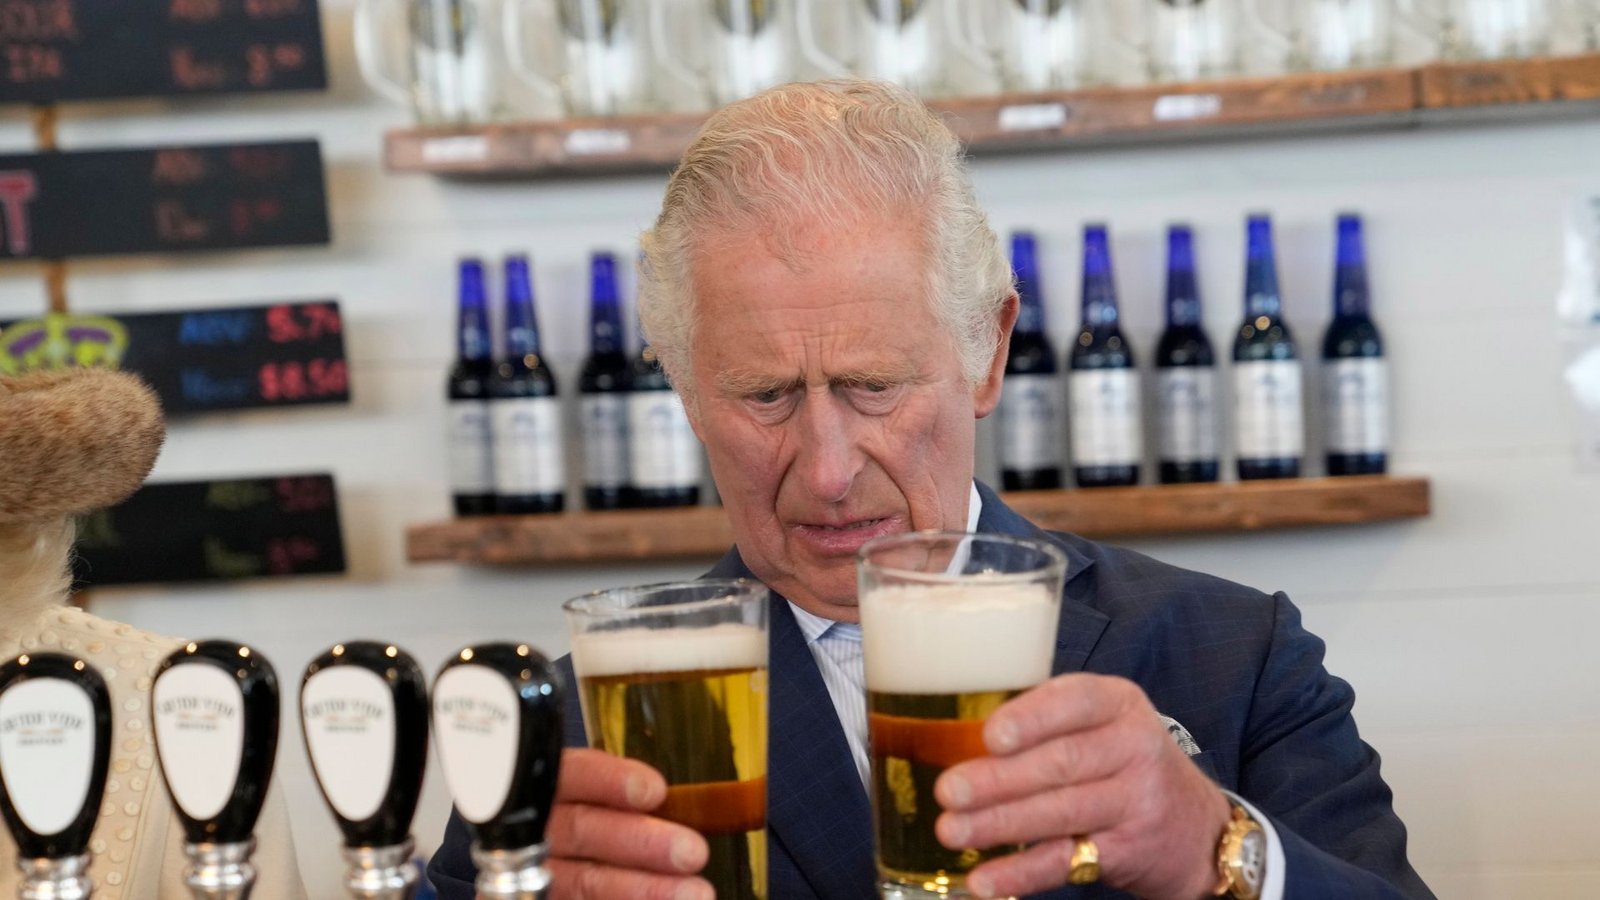 Mit Kennerblick: Prinz Charles vergleicht unterschiedlich gut gezapfte Biere in St. John's in Kanada.Foto: Paul Chiasson/The Canadian Press via AP/dpa